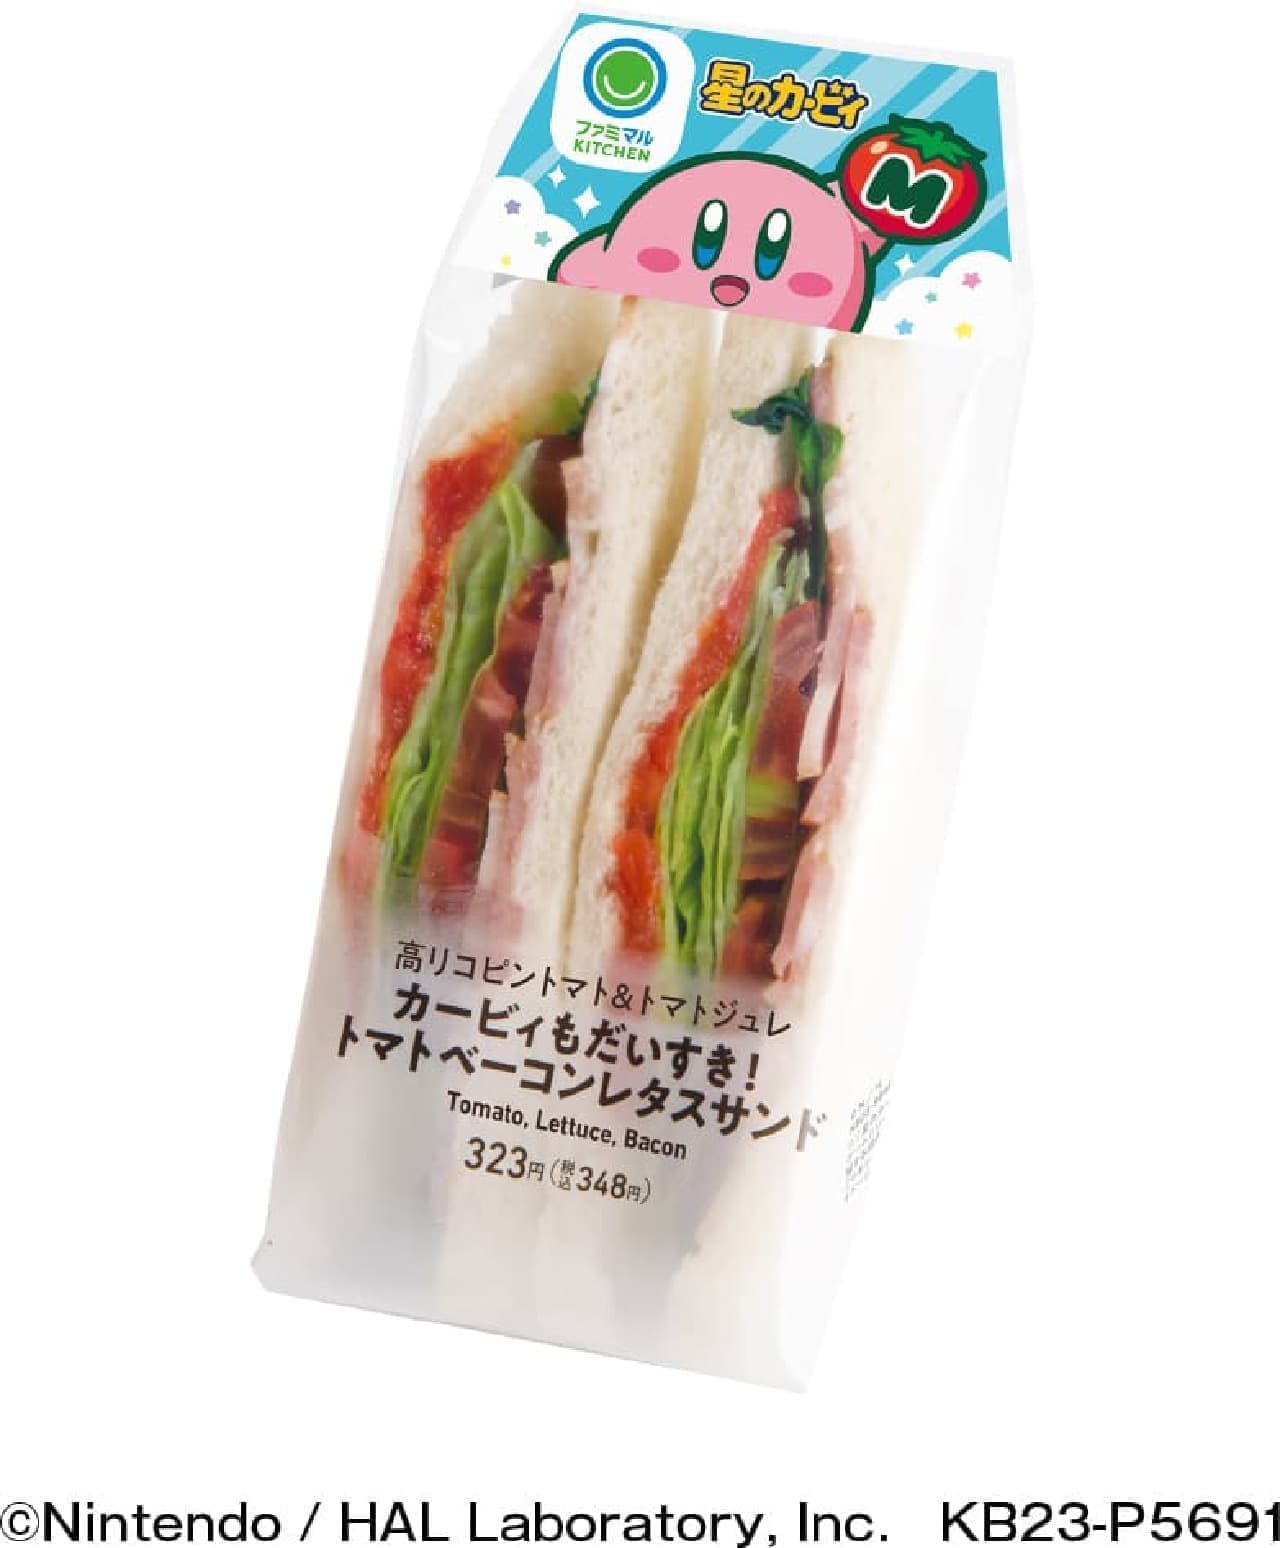 FamilyMart "Kirby is also great! Tomato Bacon Lettuce Sandwich